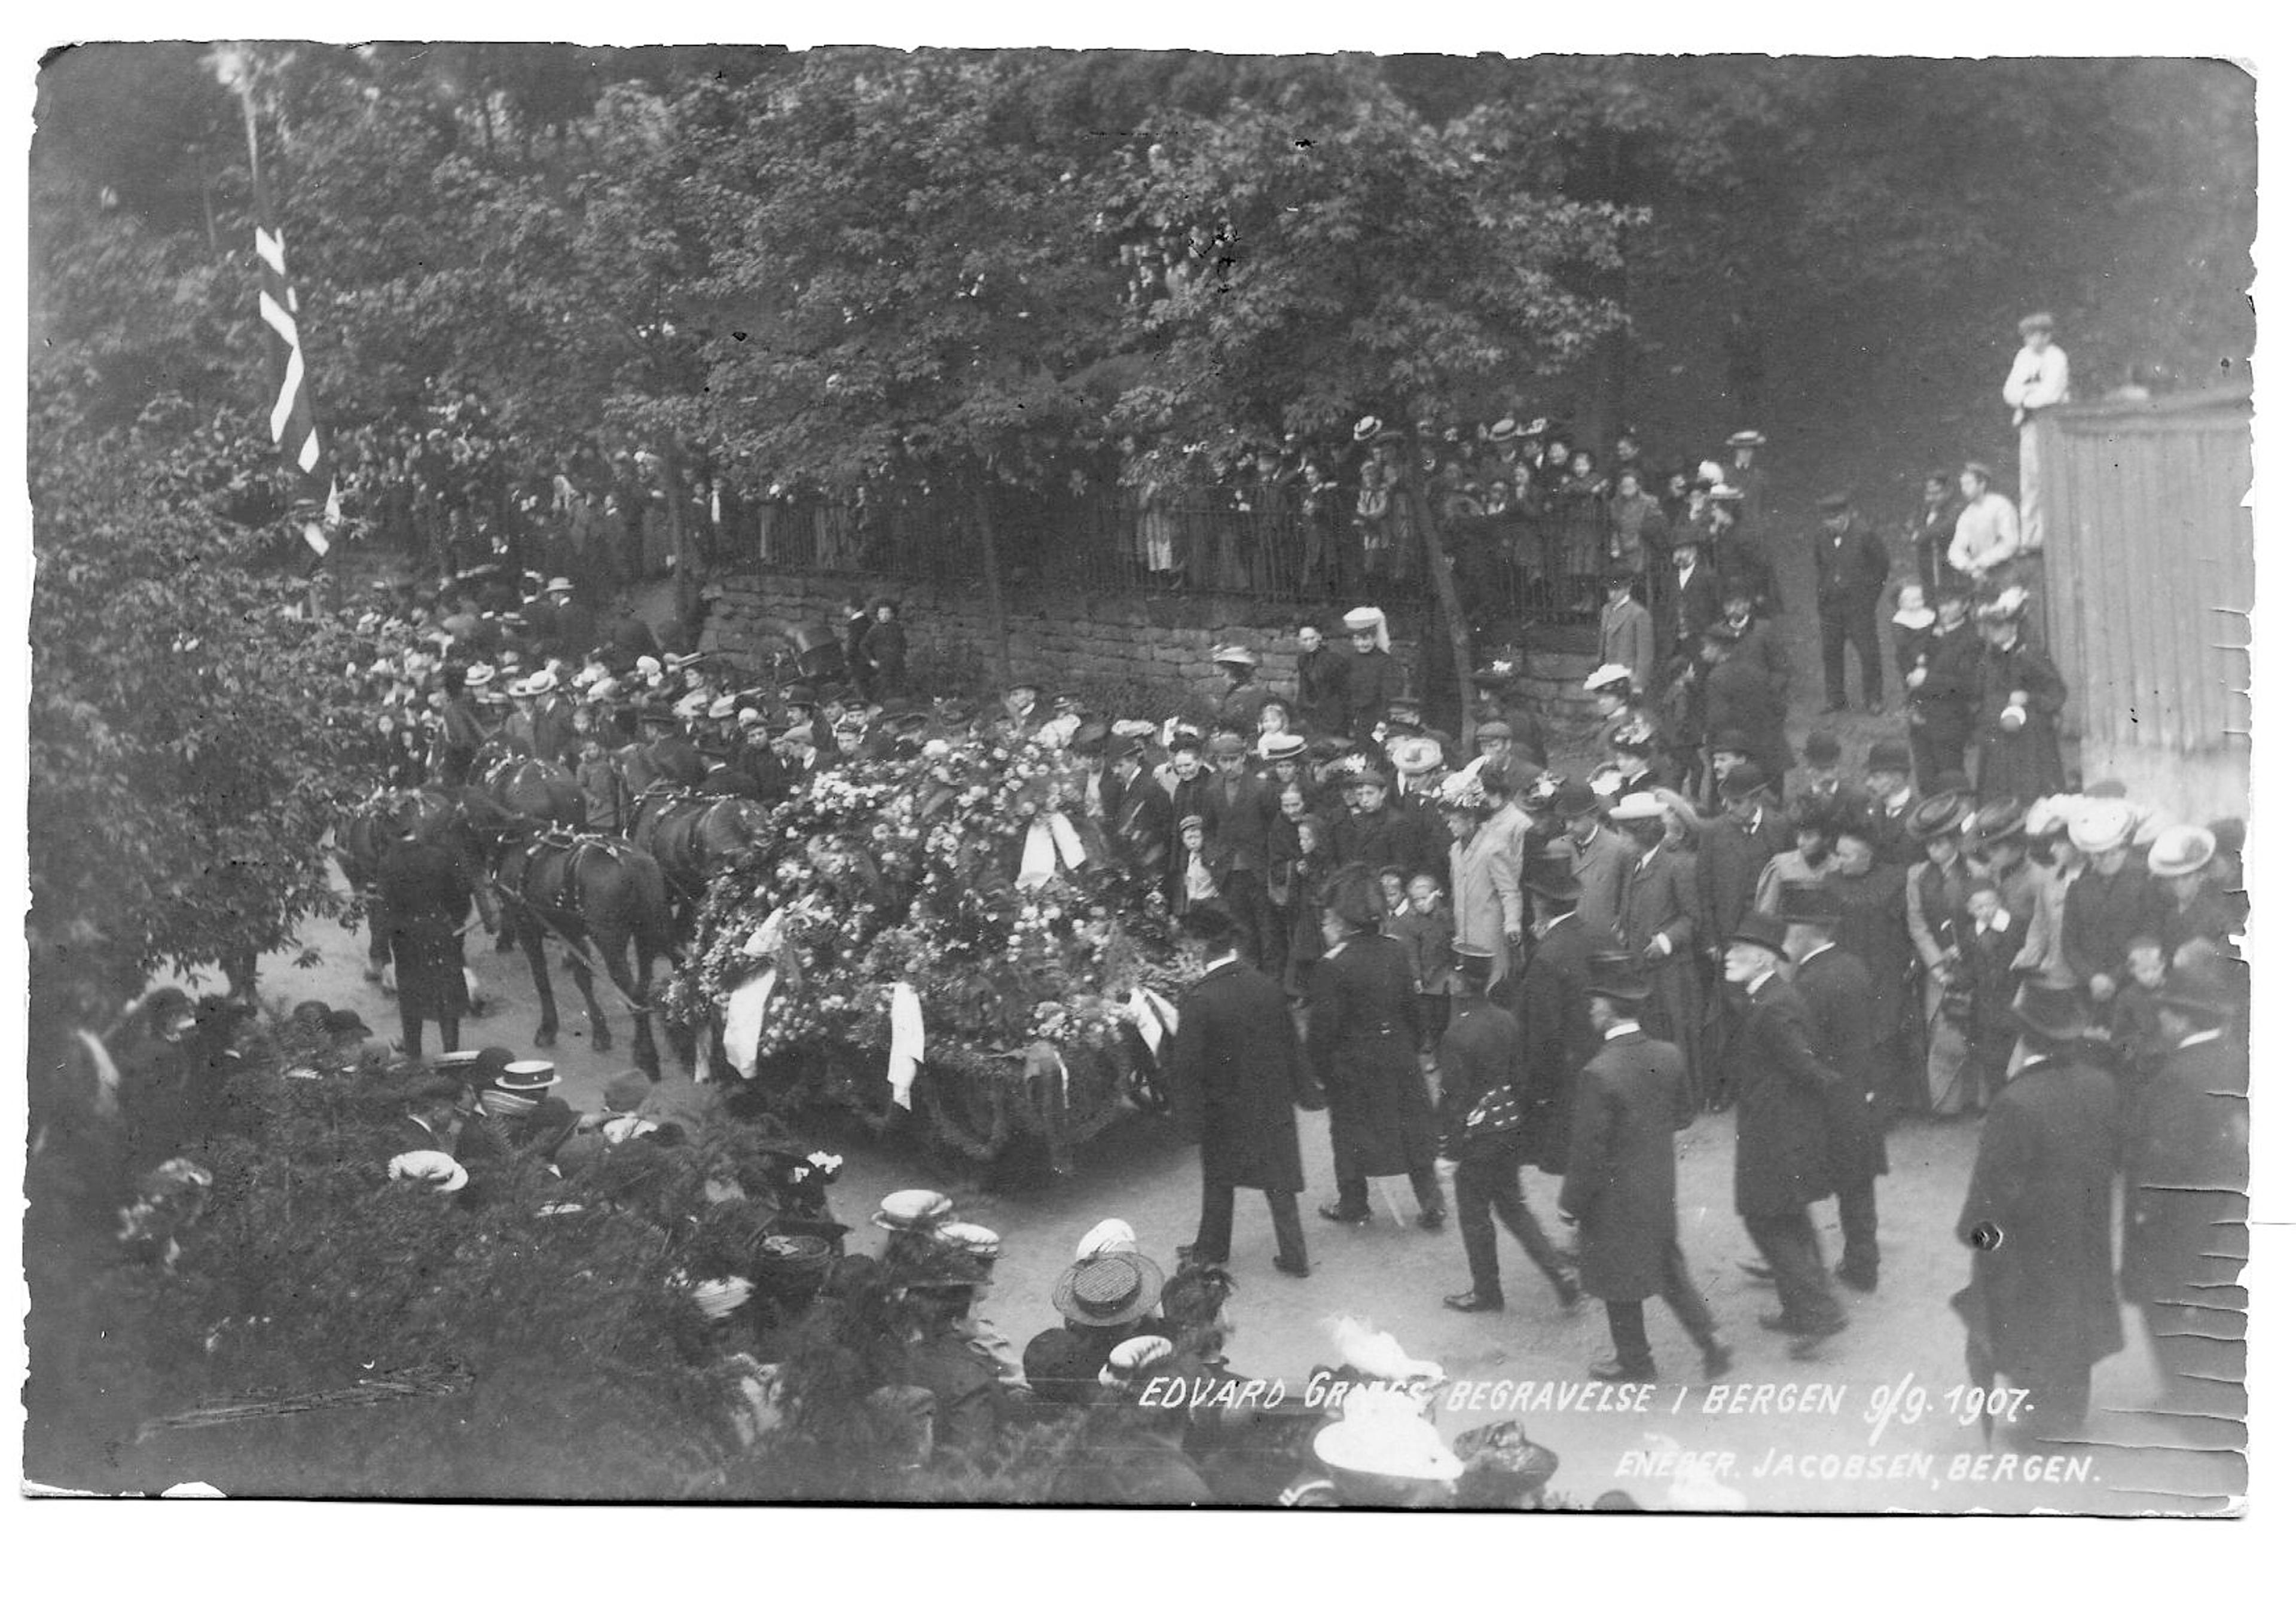 Fra Edvard Griegs begravelsesprosesjon gjennom Bergens gater, bilde av kisten på hestevogn og en stor folkemengde.